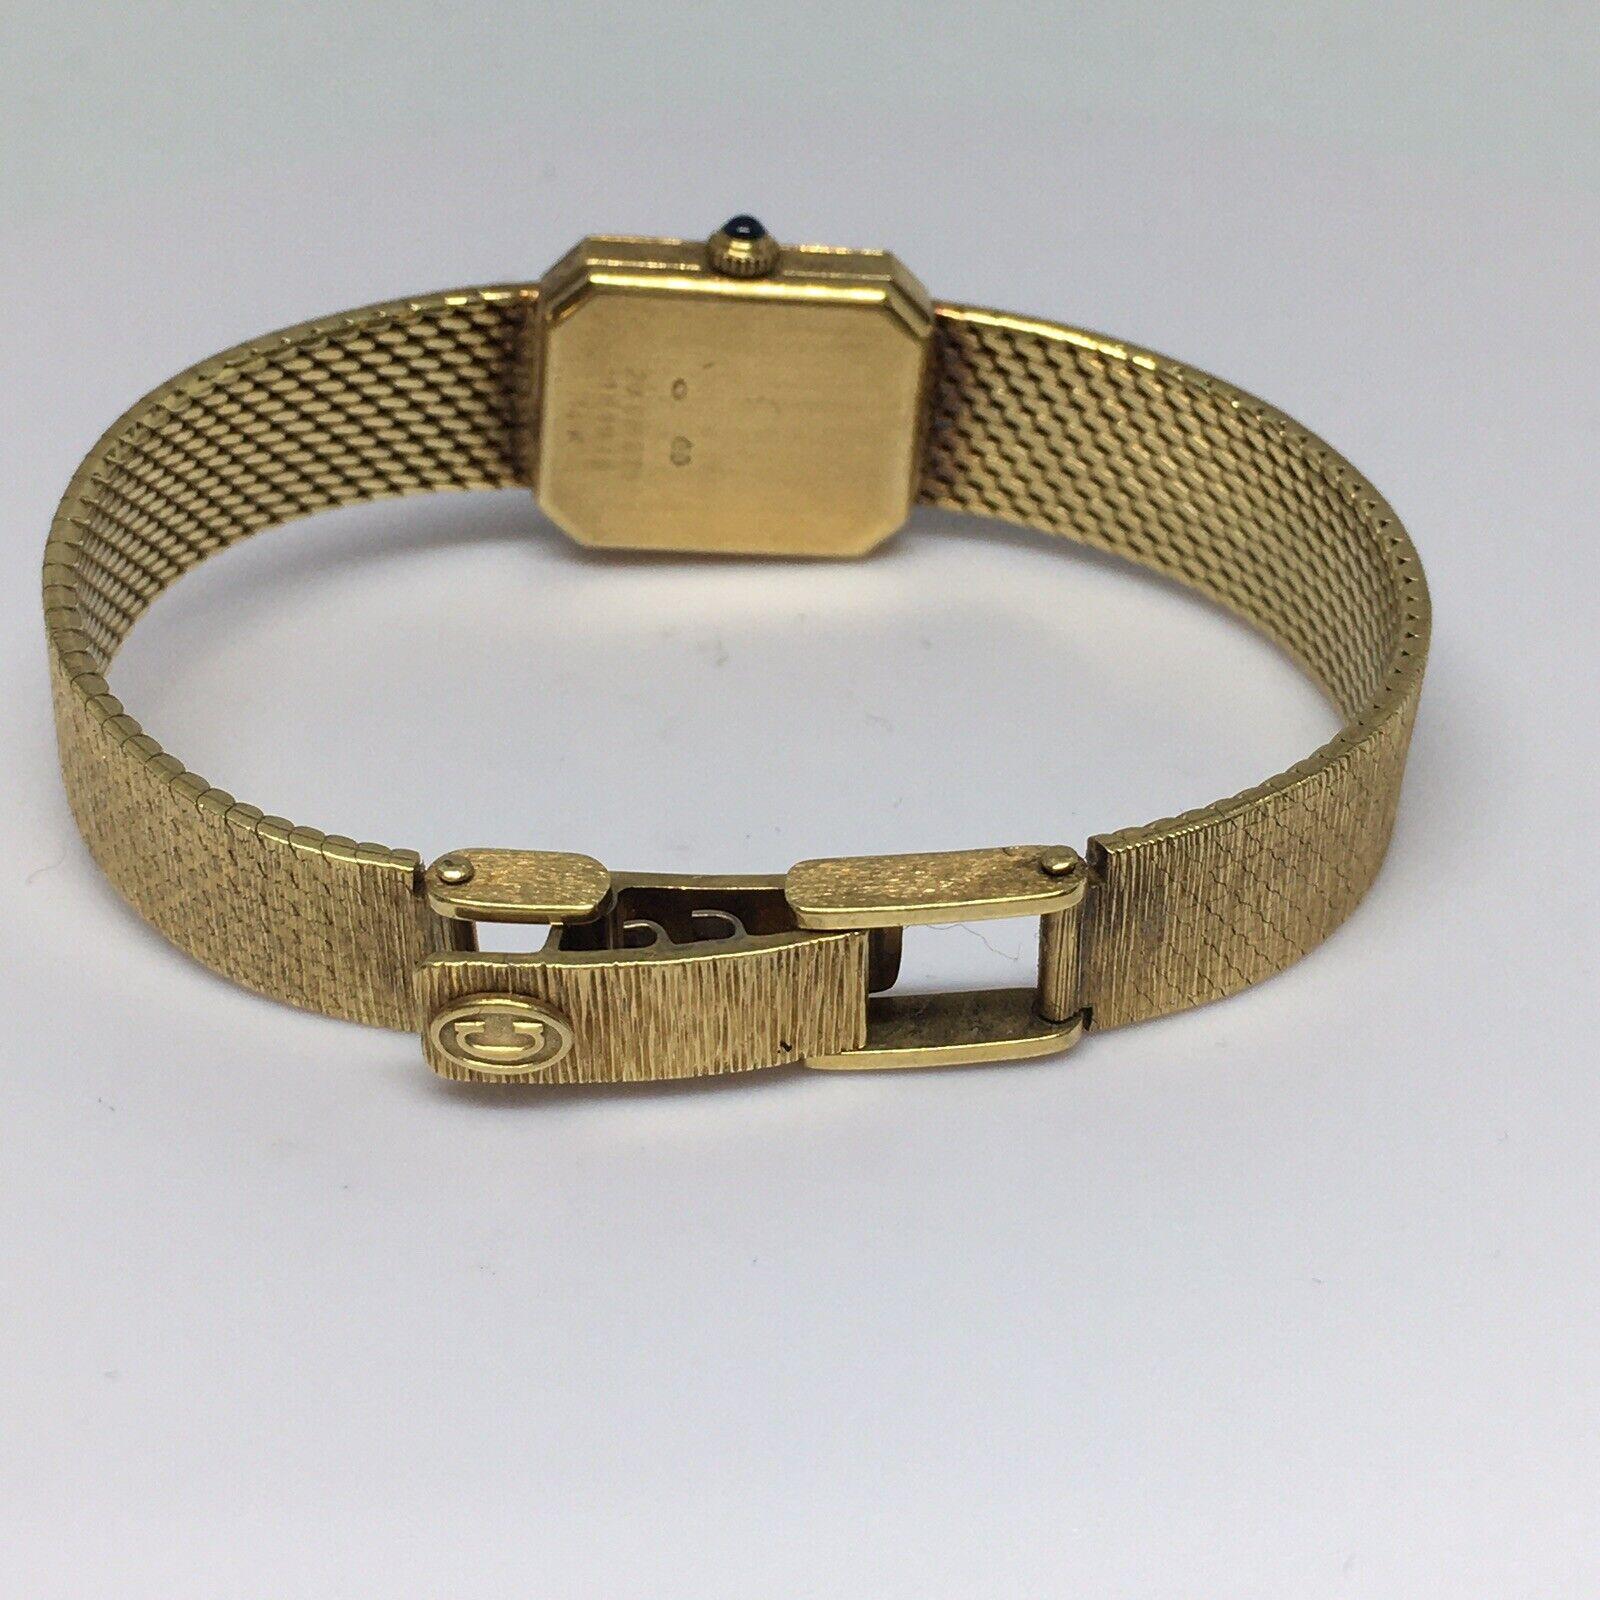 Lady's 14K Yellow Solid Gold Concord quartz Watch Factory Marked Case 6 inch


Longueur du poignet 6 pouces
Boîtier 18 mm par 15 mm 
Bracelet de 10 mm de large
Marquage  